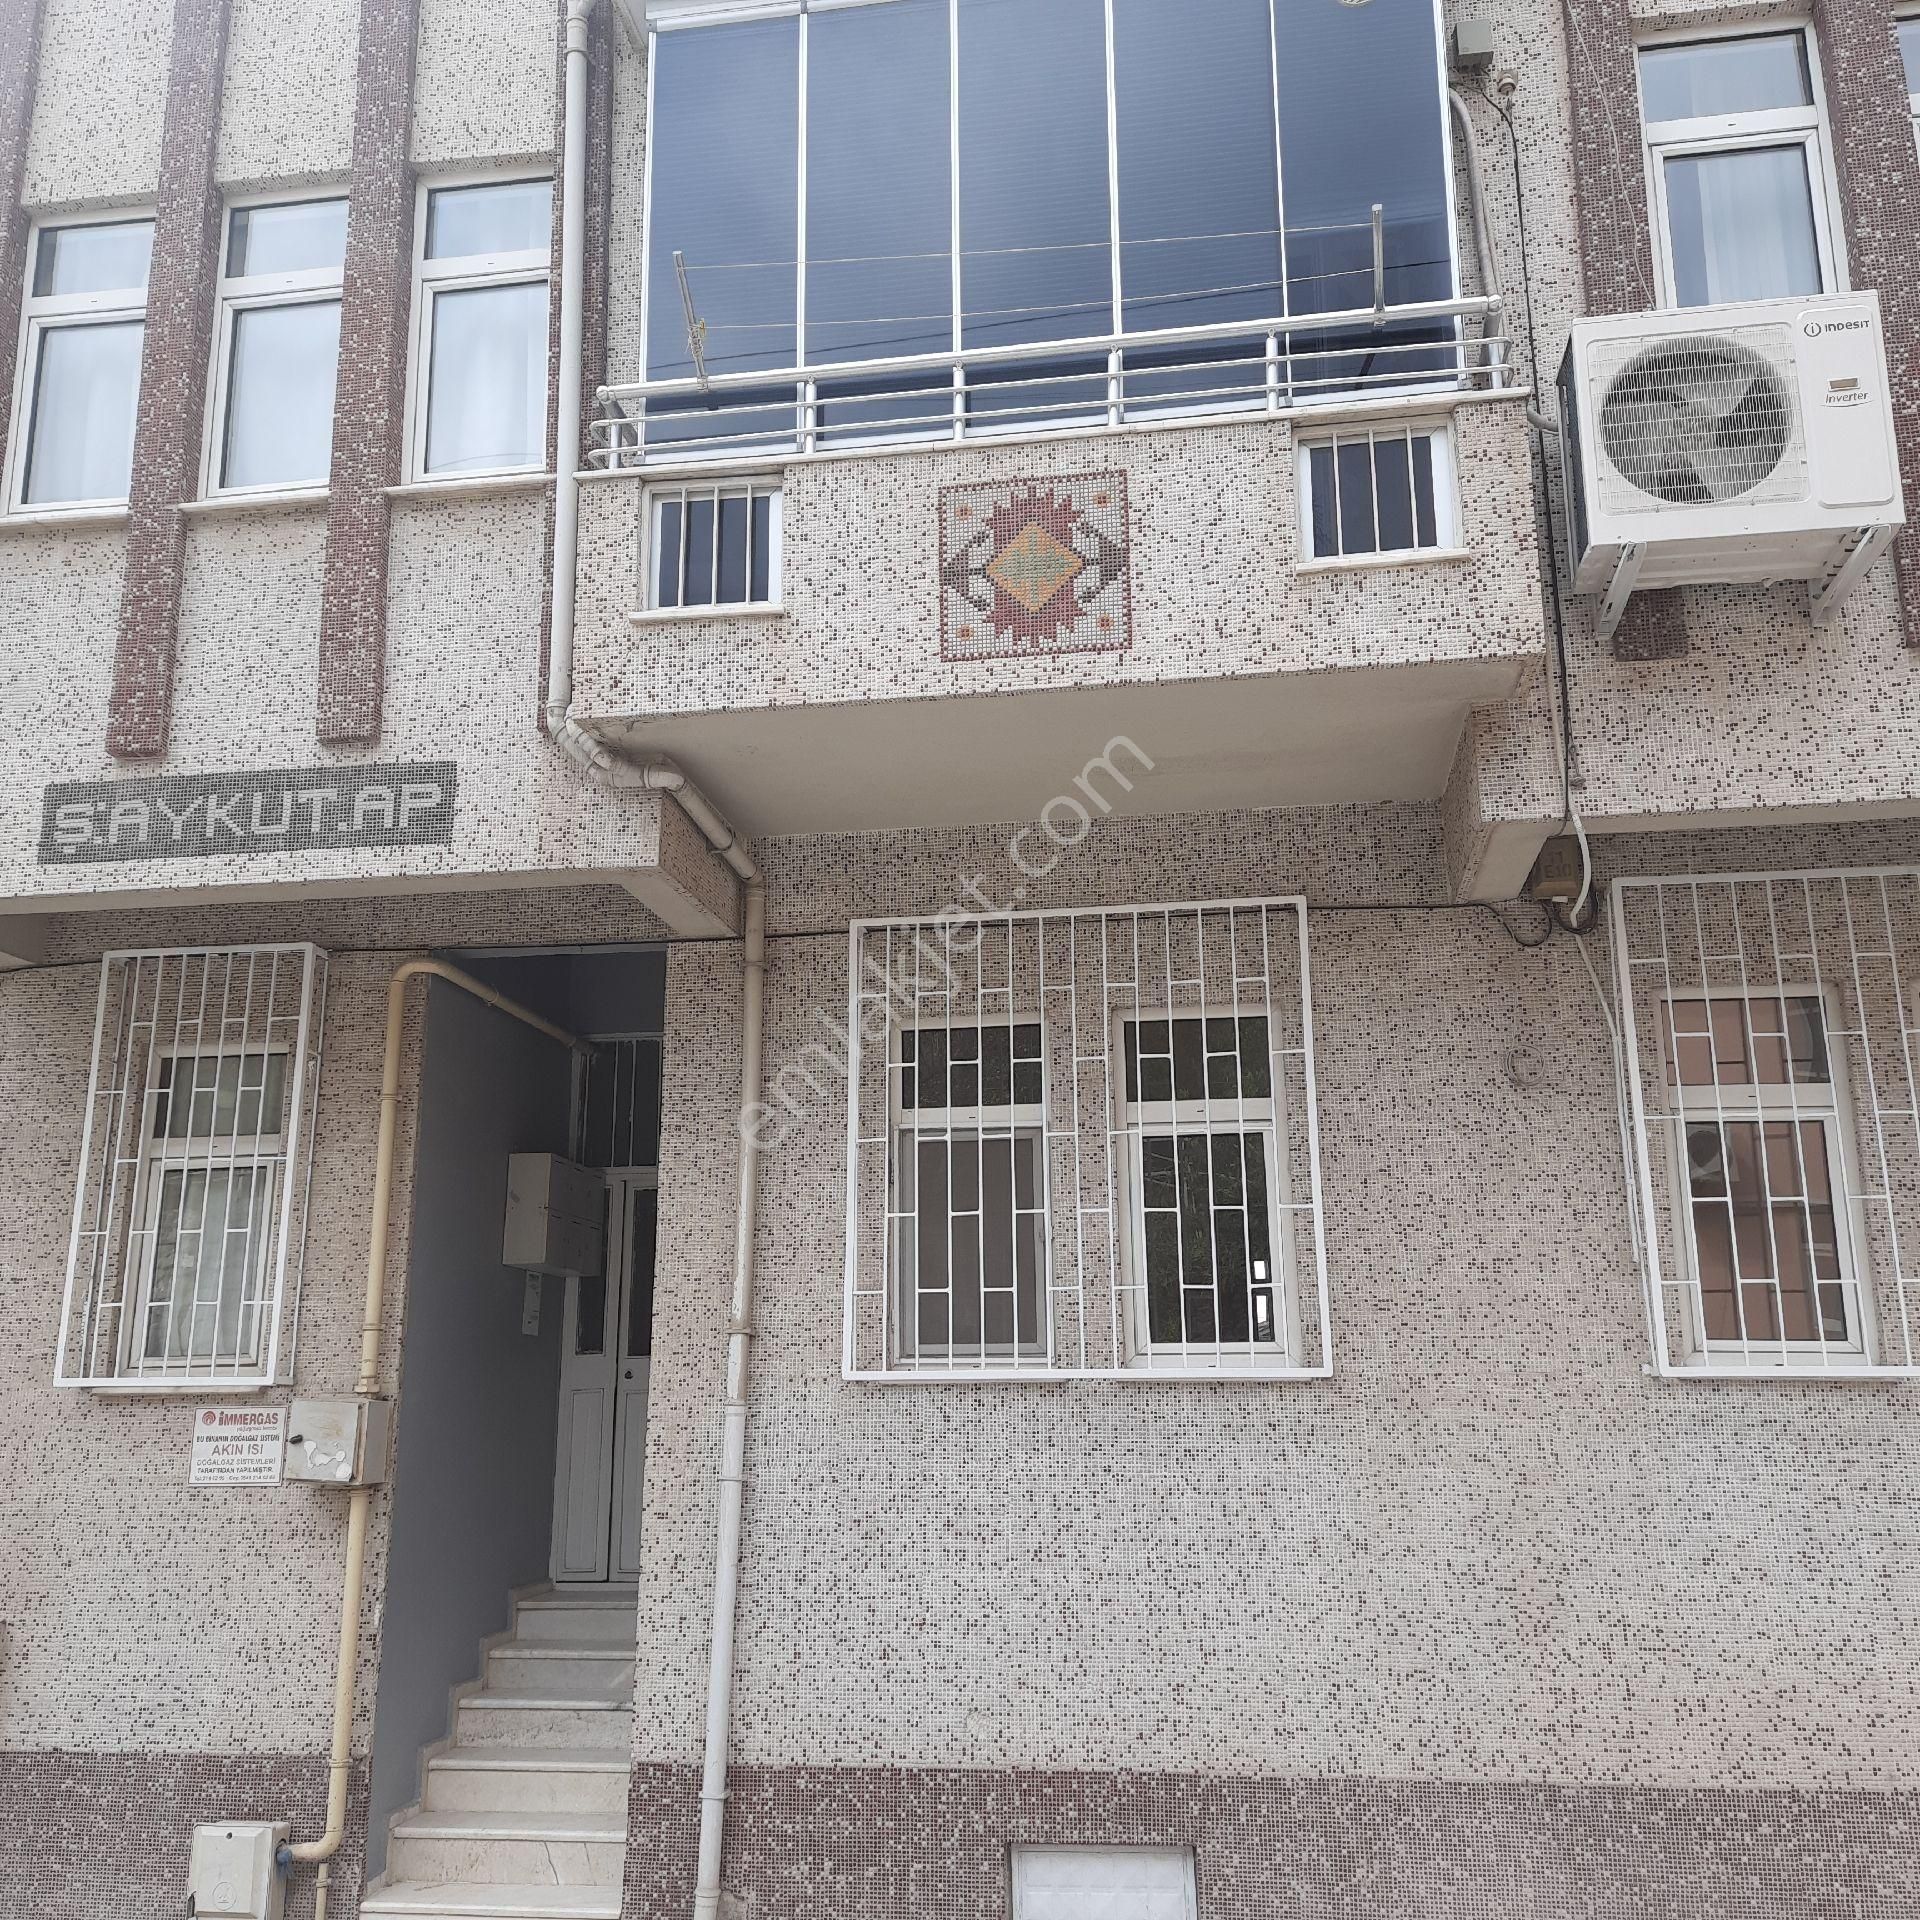 Niksar Gazi Osman Paşa Kiralık Daire Çarşıya okullara yakın 2+1 doğalgazlı daire 